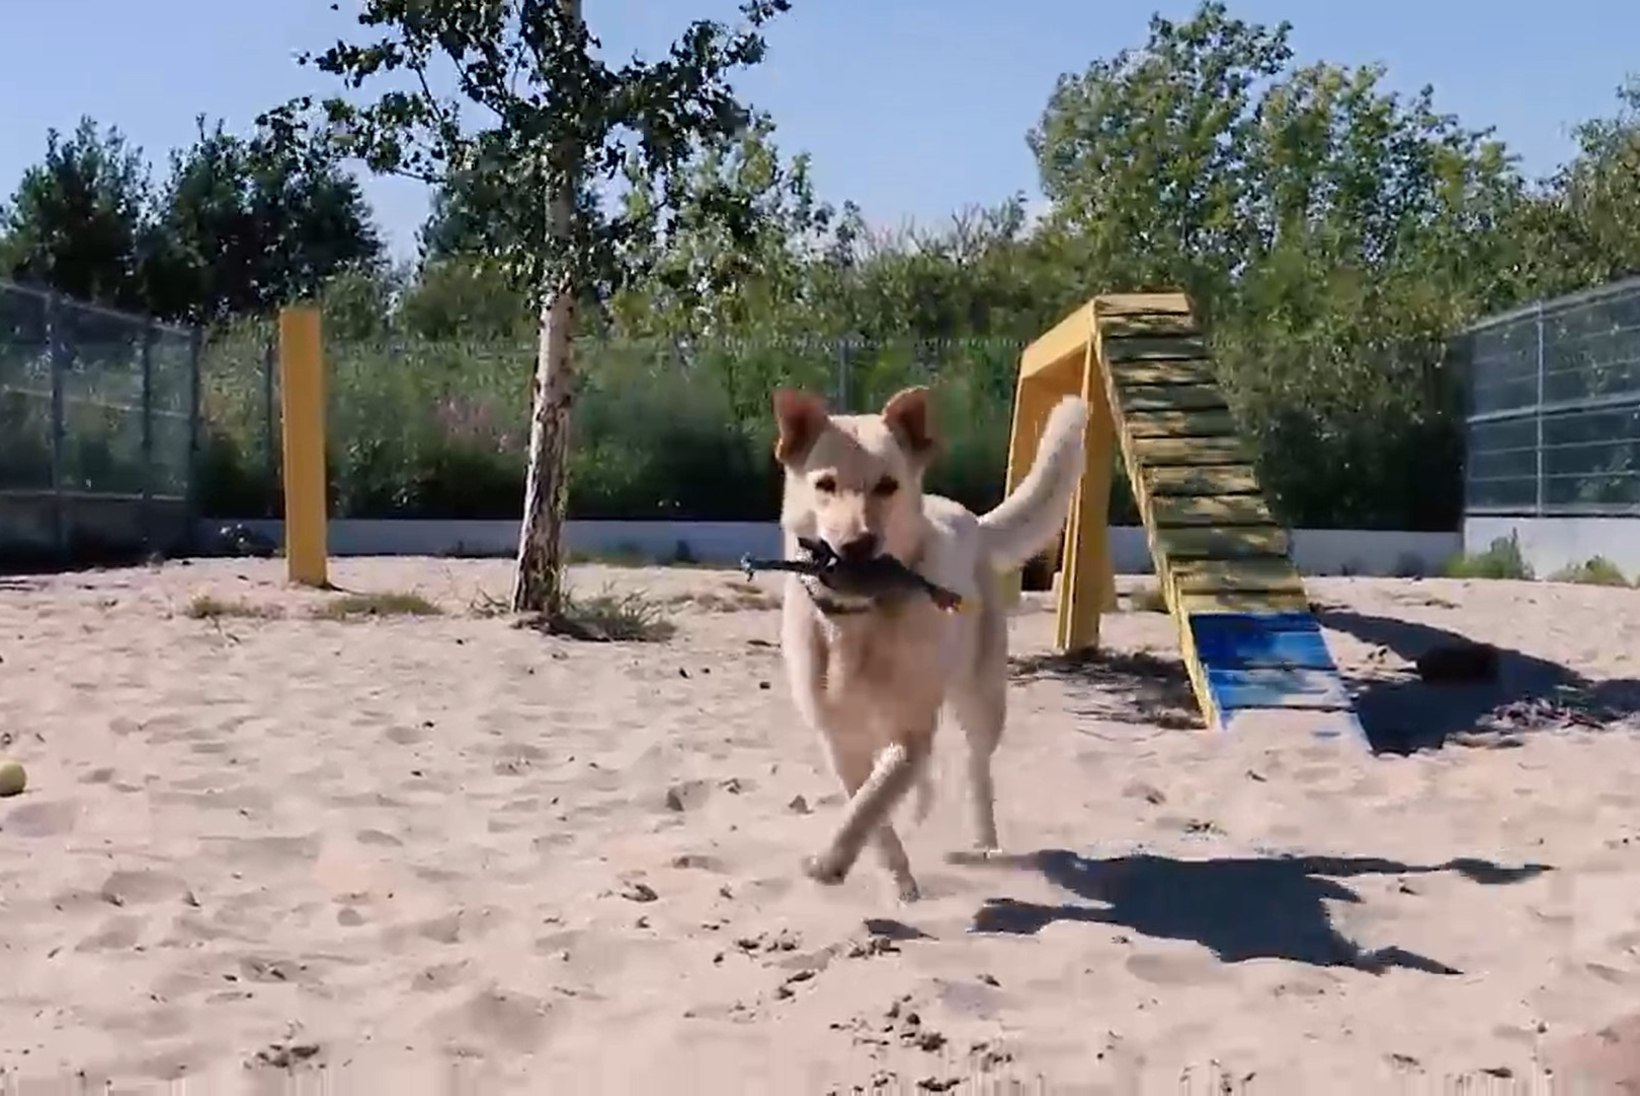 ÕHTULEHE VIDEO | Koduotsija: varjupaiga kõige inimsõbralikum koer ootab pikisilmi uut omanikku